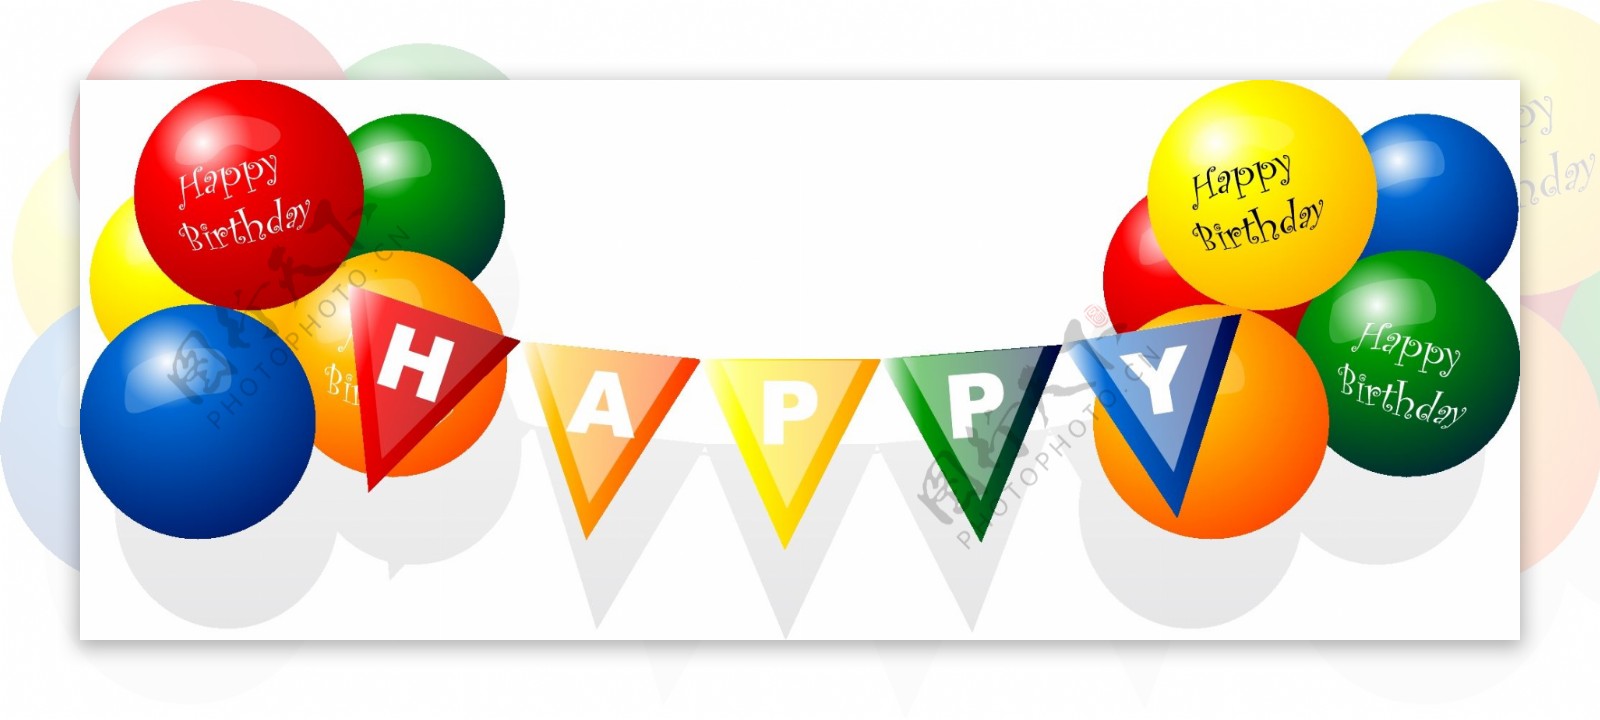 生日快乐气球矢量素材